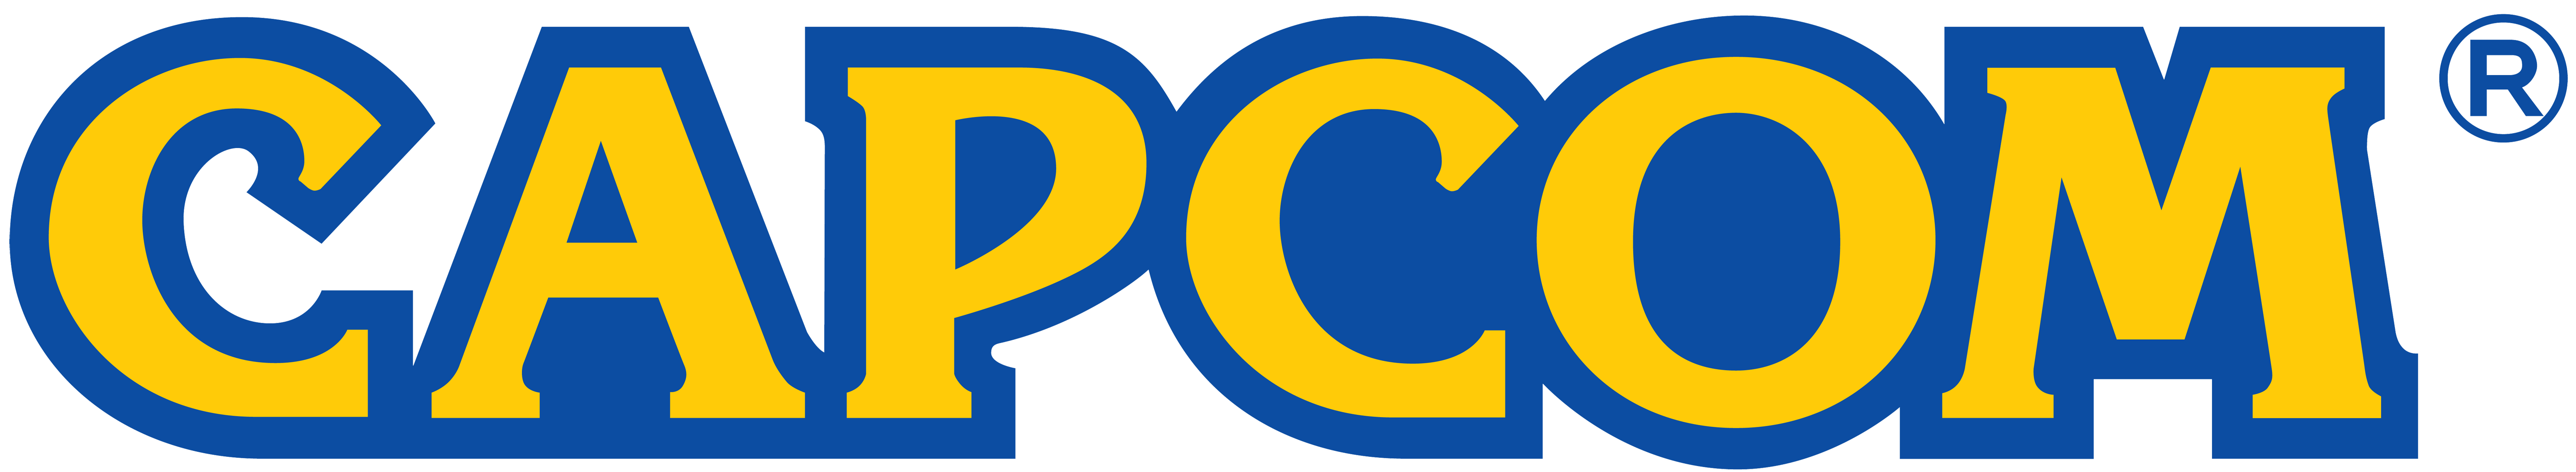 Capcom Logo Fixes Devil May Cry 5